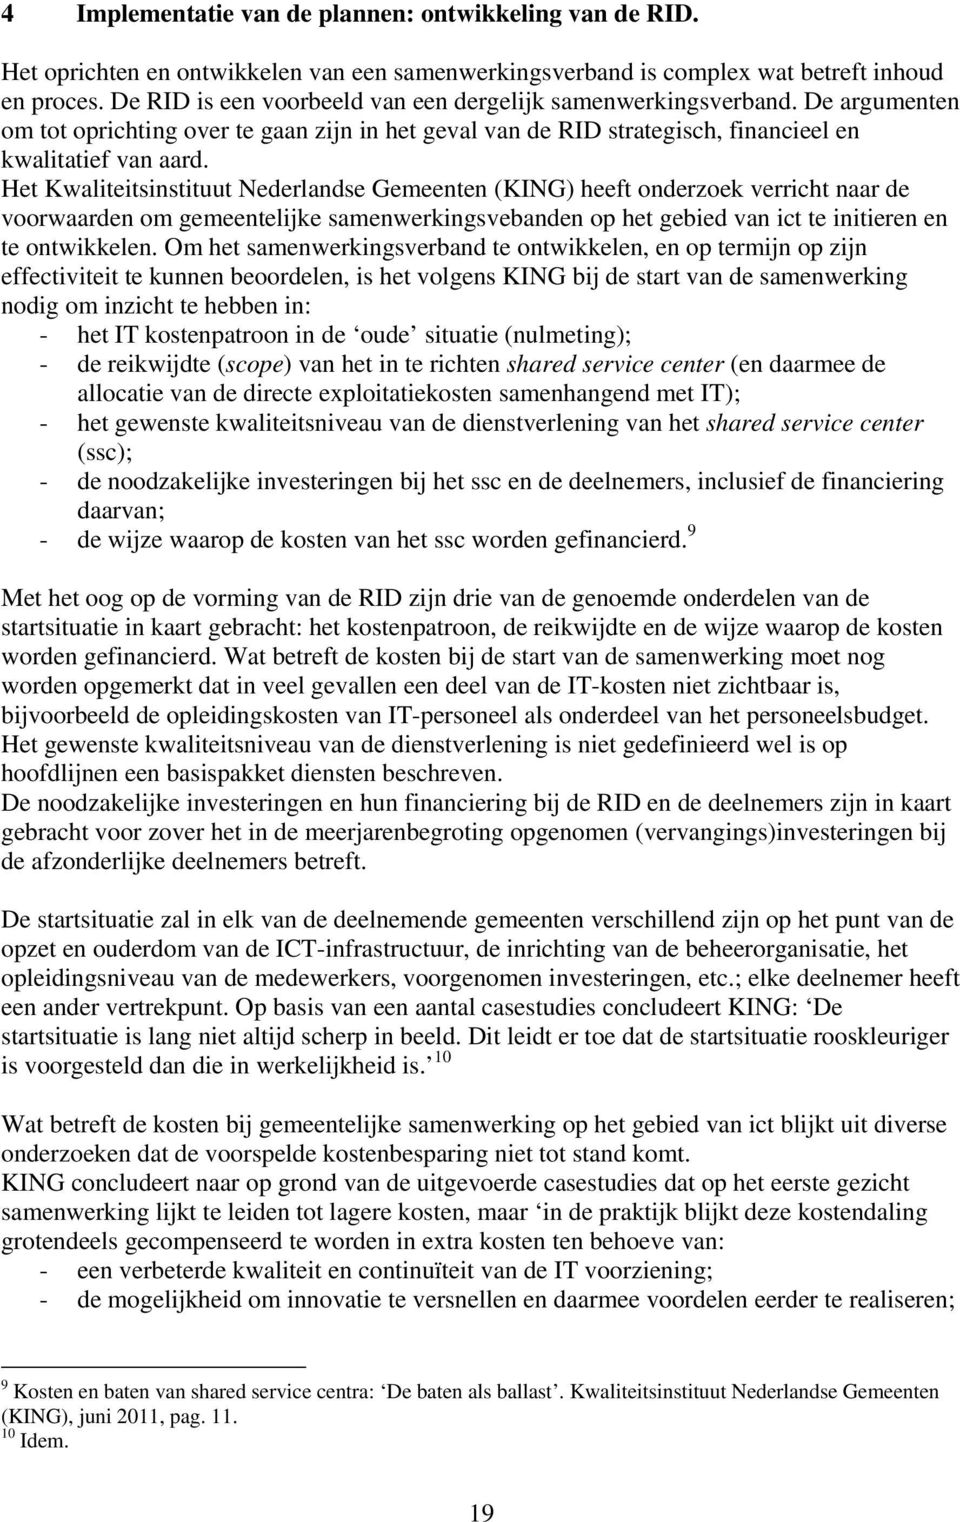 Het Kwaliteitsinstituut Nederlandse Gemeenten (KING) heeft onderzoek verricht naar de voorwaarden om gemeentelijke samenwerkingsvebanden op het gebied van ict te initieren en te ontwikkelen.